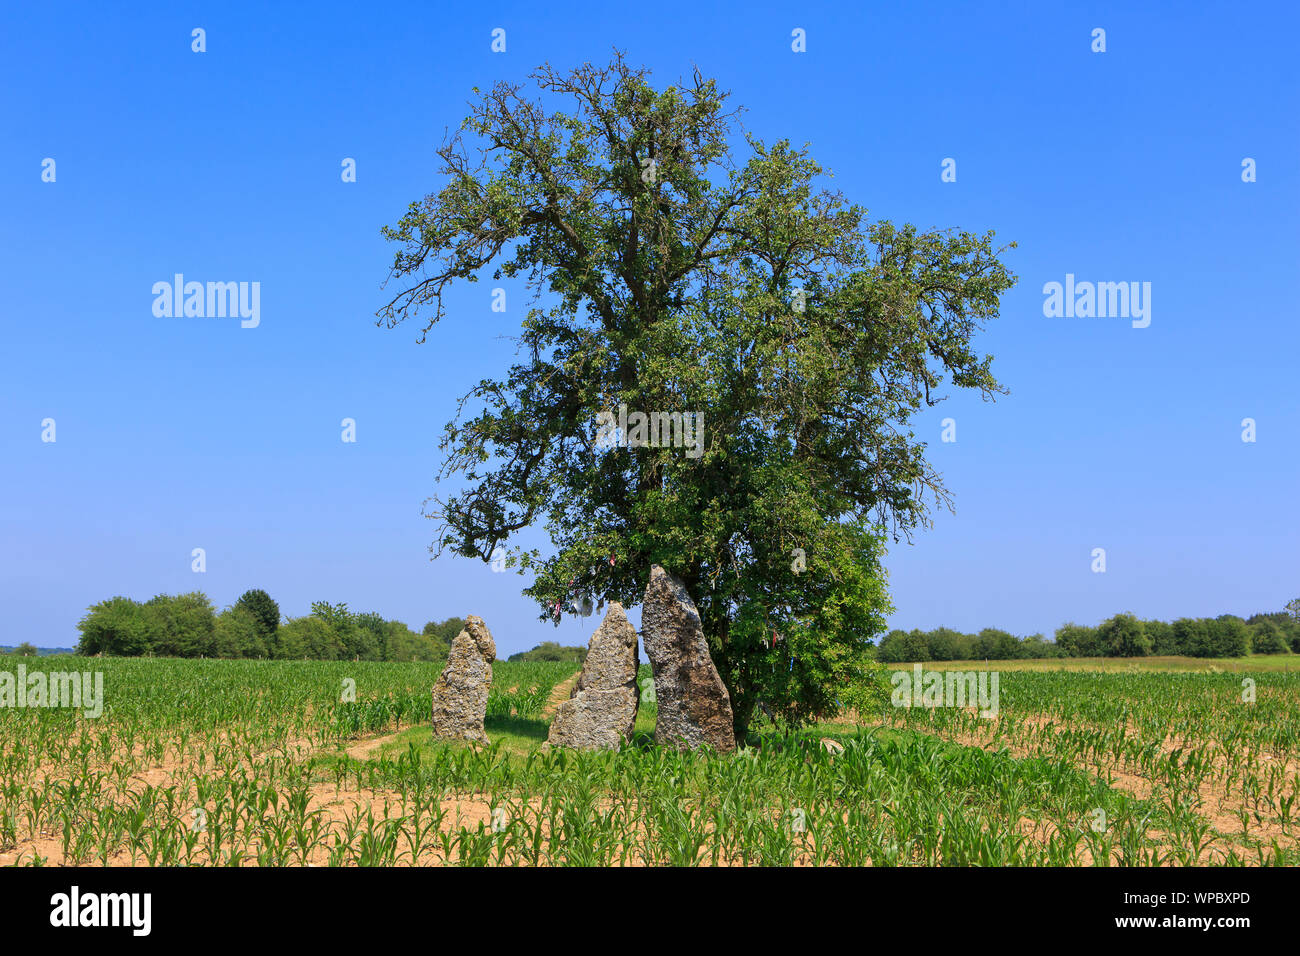 Le megalthic 3 menhirs d'Oppagne (3 Menhirs d'Oppagne) d'environ 3000 av. J.-C. (culture Seine-Oise-Marne) dans la région de Weris, Belgique Banque D'Images